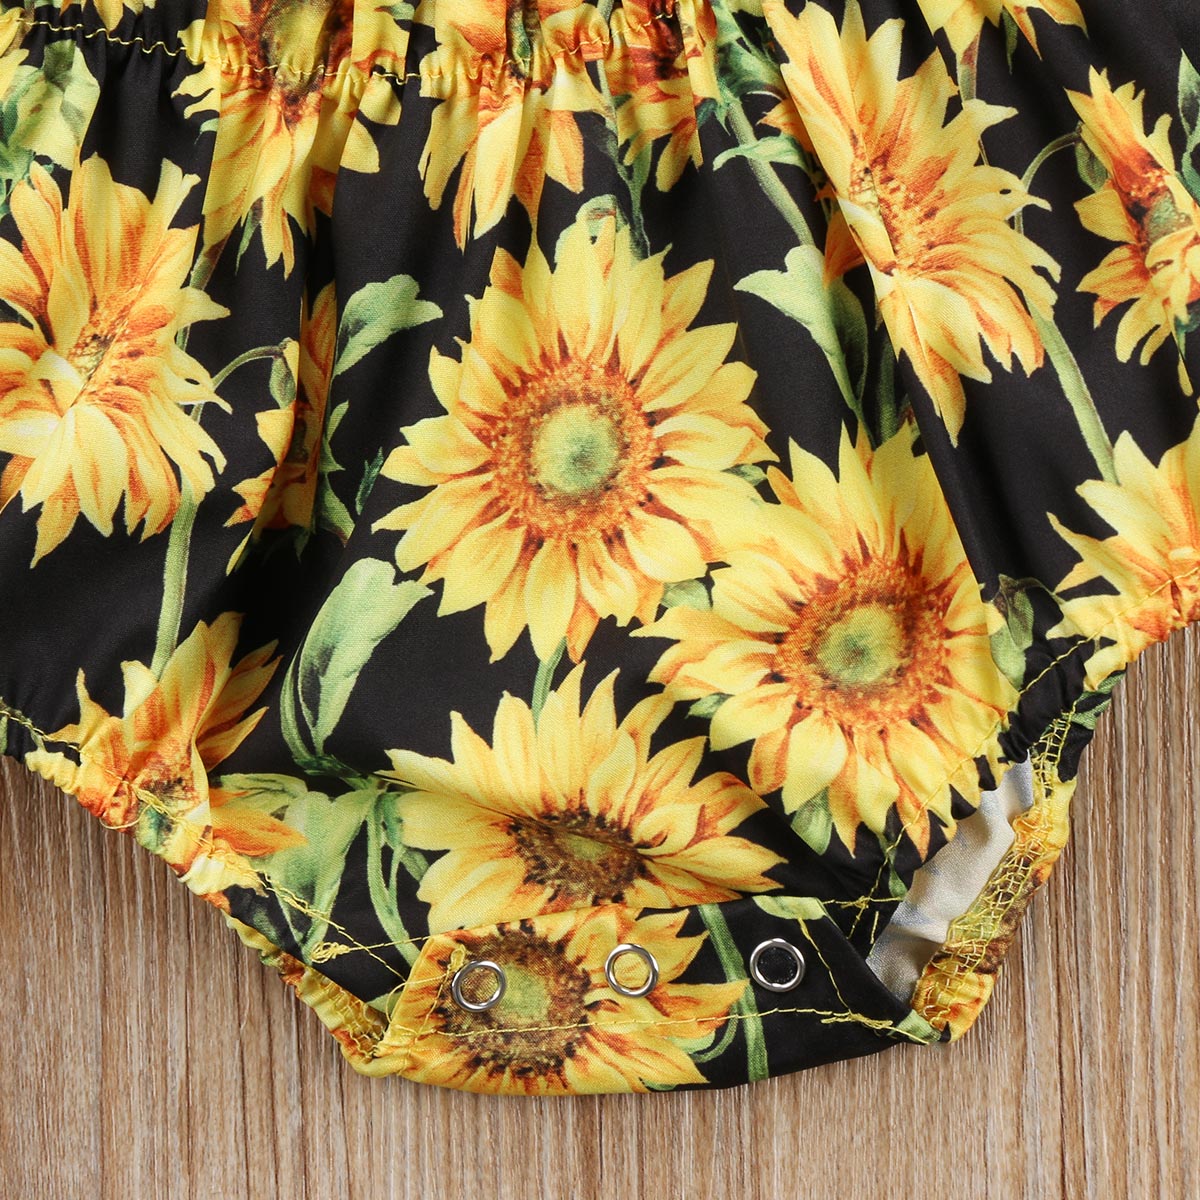 Newborn Baby Girls Flower  Bodysuit Jumpsuit Sunsuit Outfits Set Clothes - ebowsos